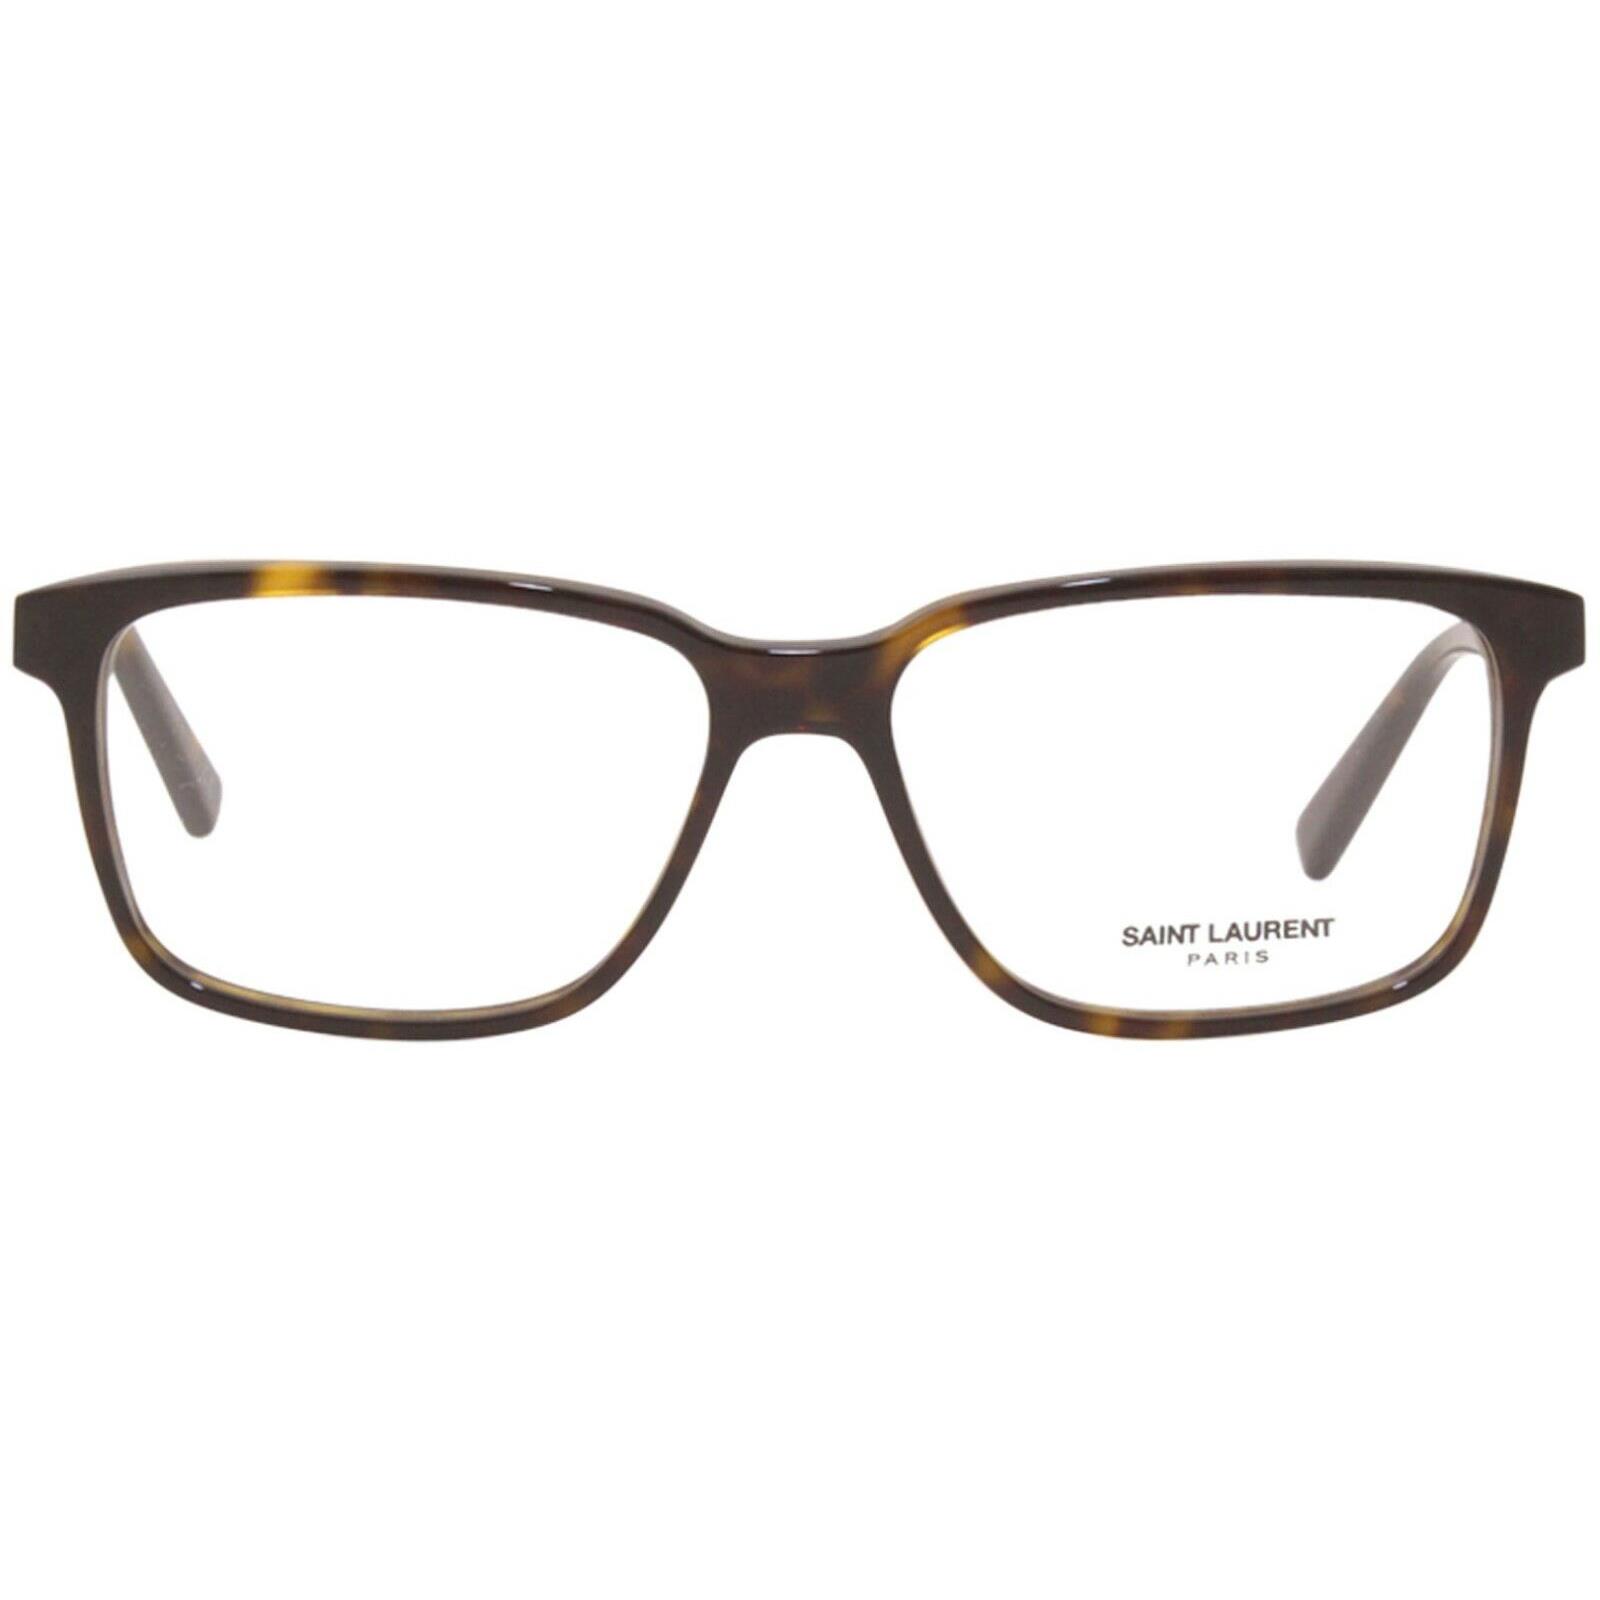 Yves Saint Laurent eyeglasses Saint Laurent - Havana Frame 0